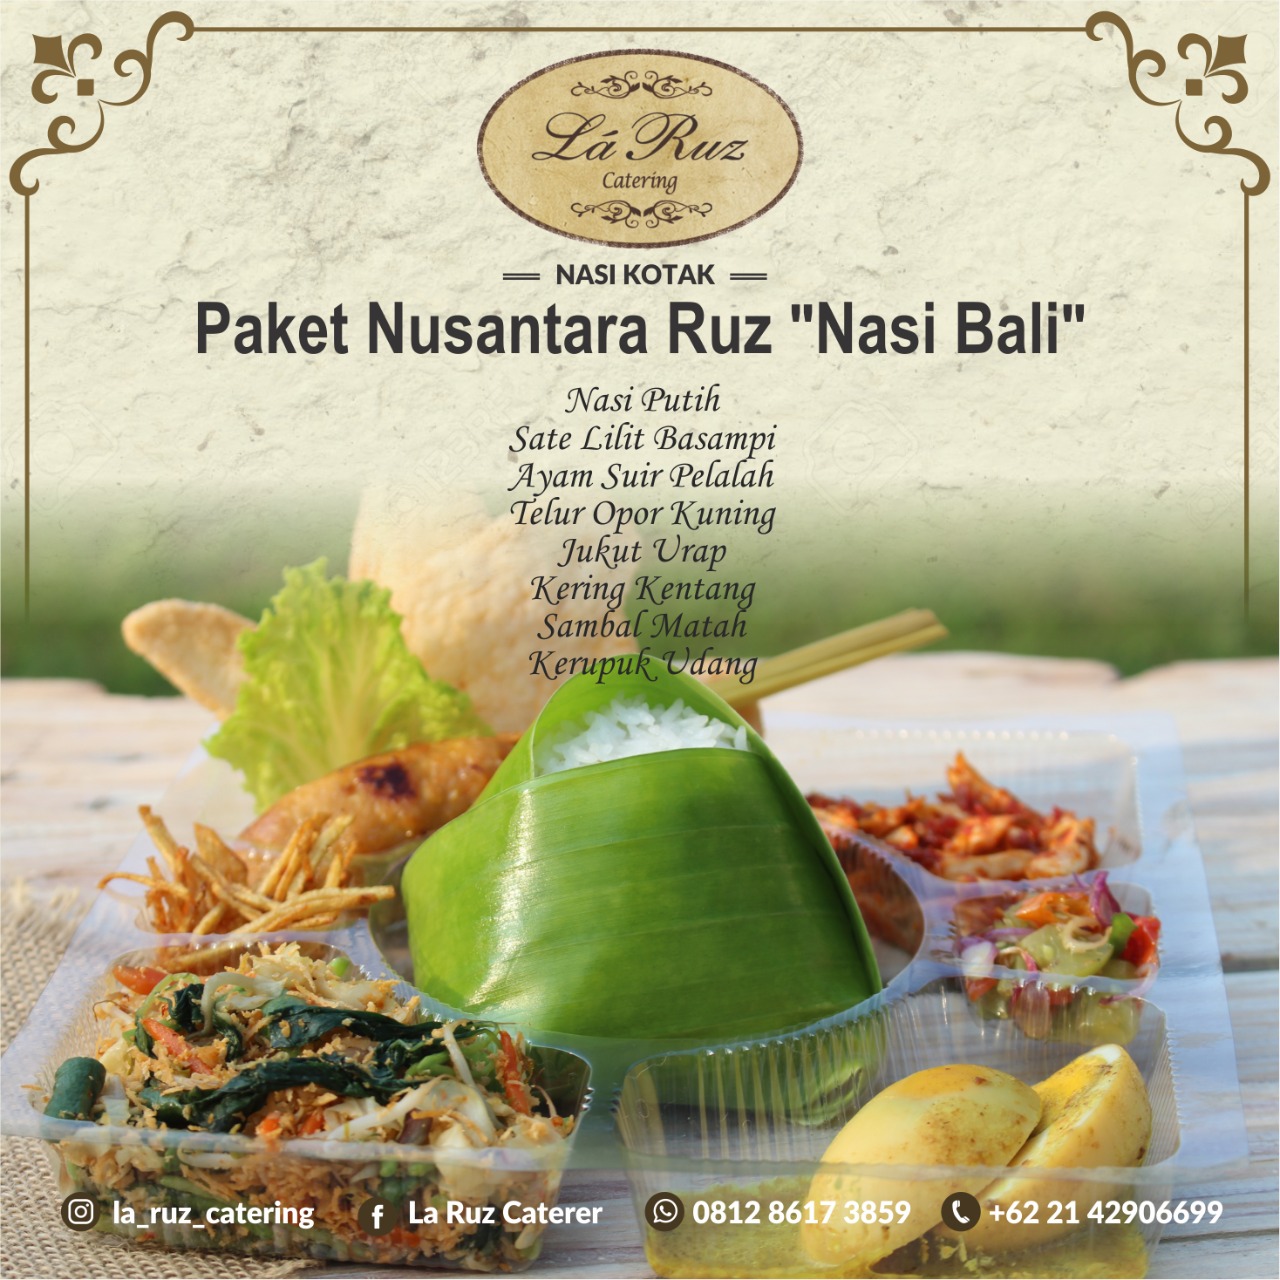 Paket Nusantara Nasi Bali (Box) by La Ruz Catering